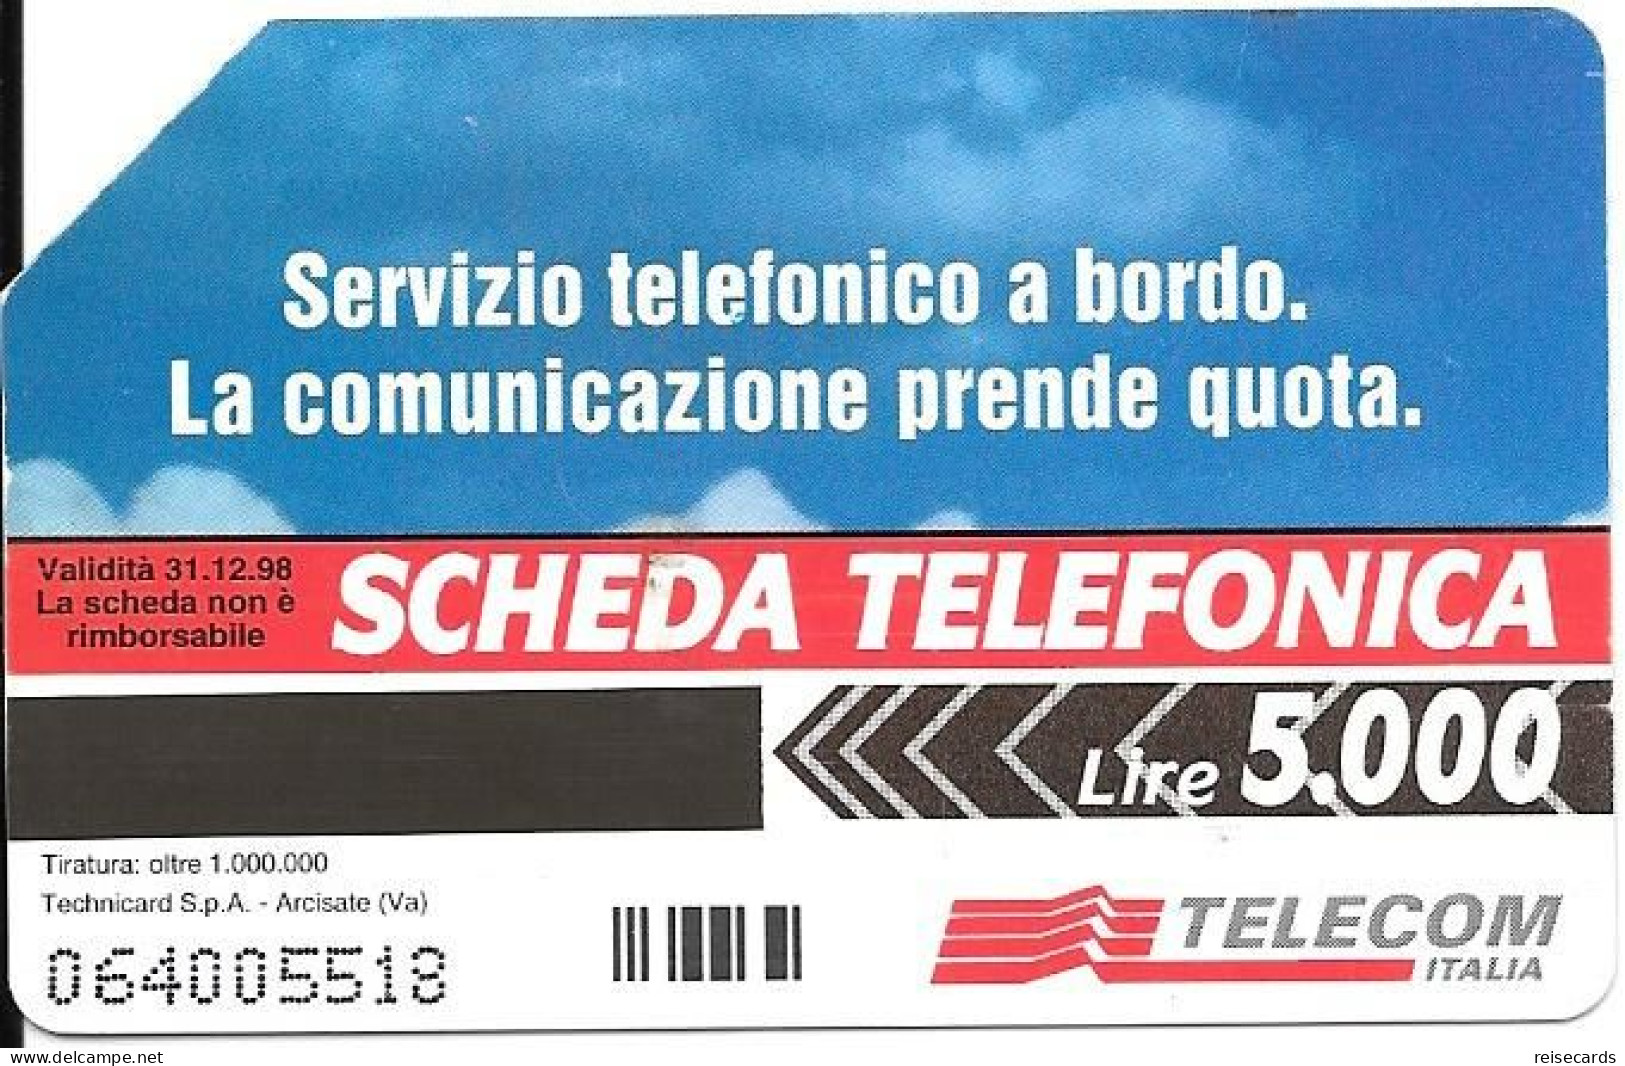 Italy: Telecom Italia - Servizio Telefonico A Bordo - Public Advertising